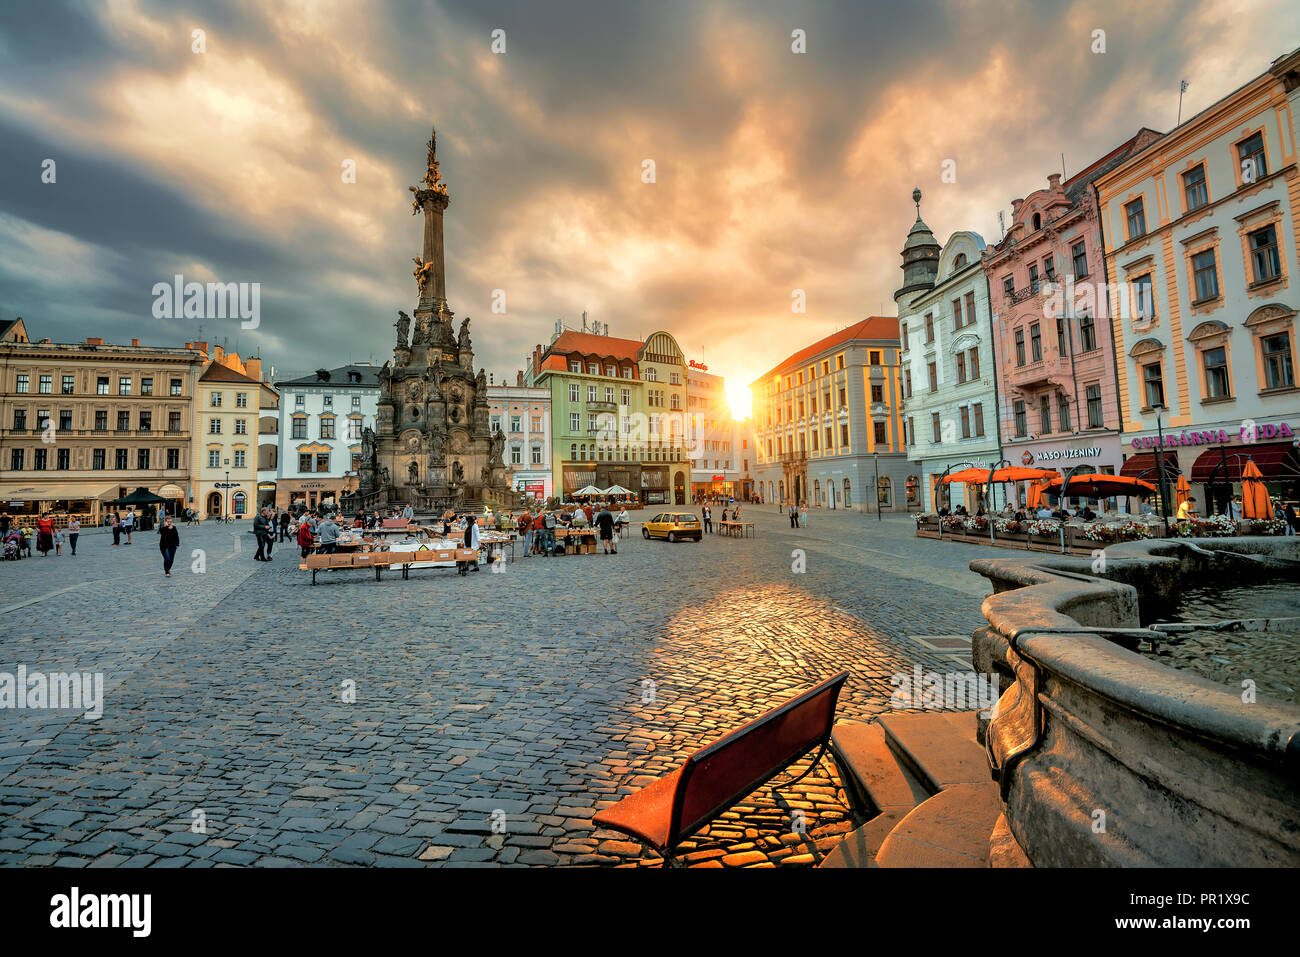 Vista de la plaza principal con el monumento de la columna de la Santísima Trinidad en la histórica ciudad de Olomouc. República Checa Foto de stock